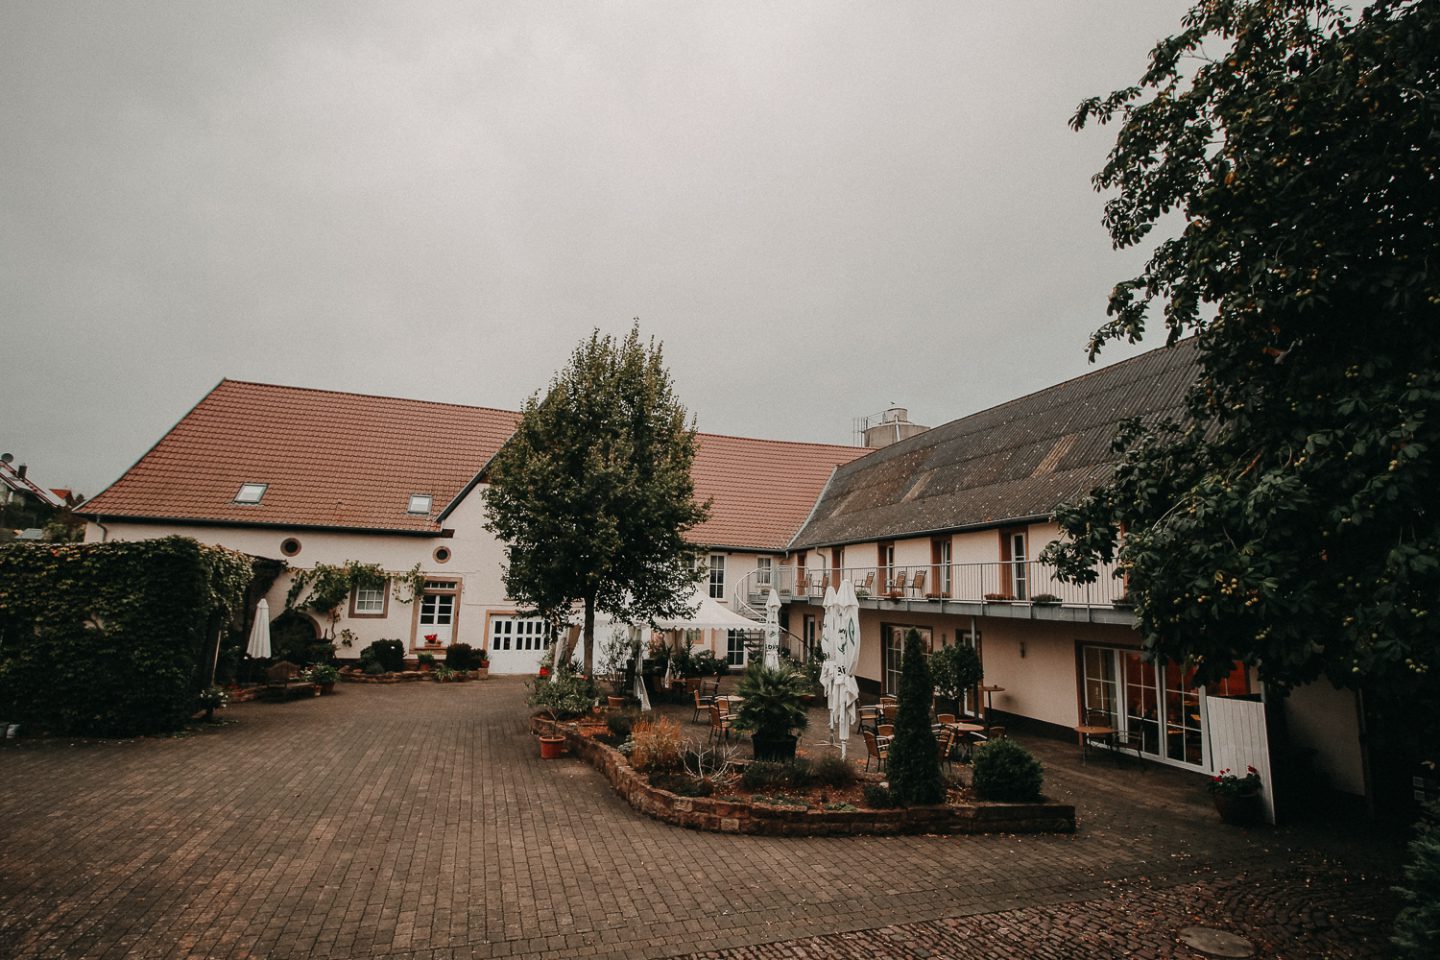 Wochenendtrip Deutschland Landidyll Hotel Klostermühle Pfalz Restaurant